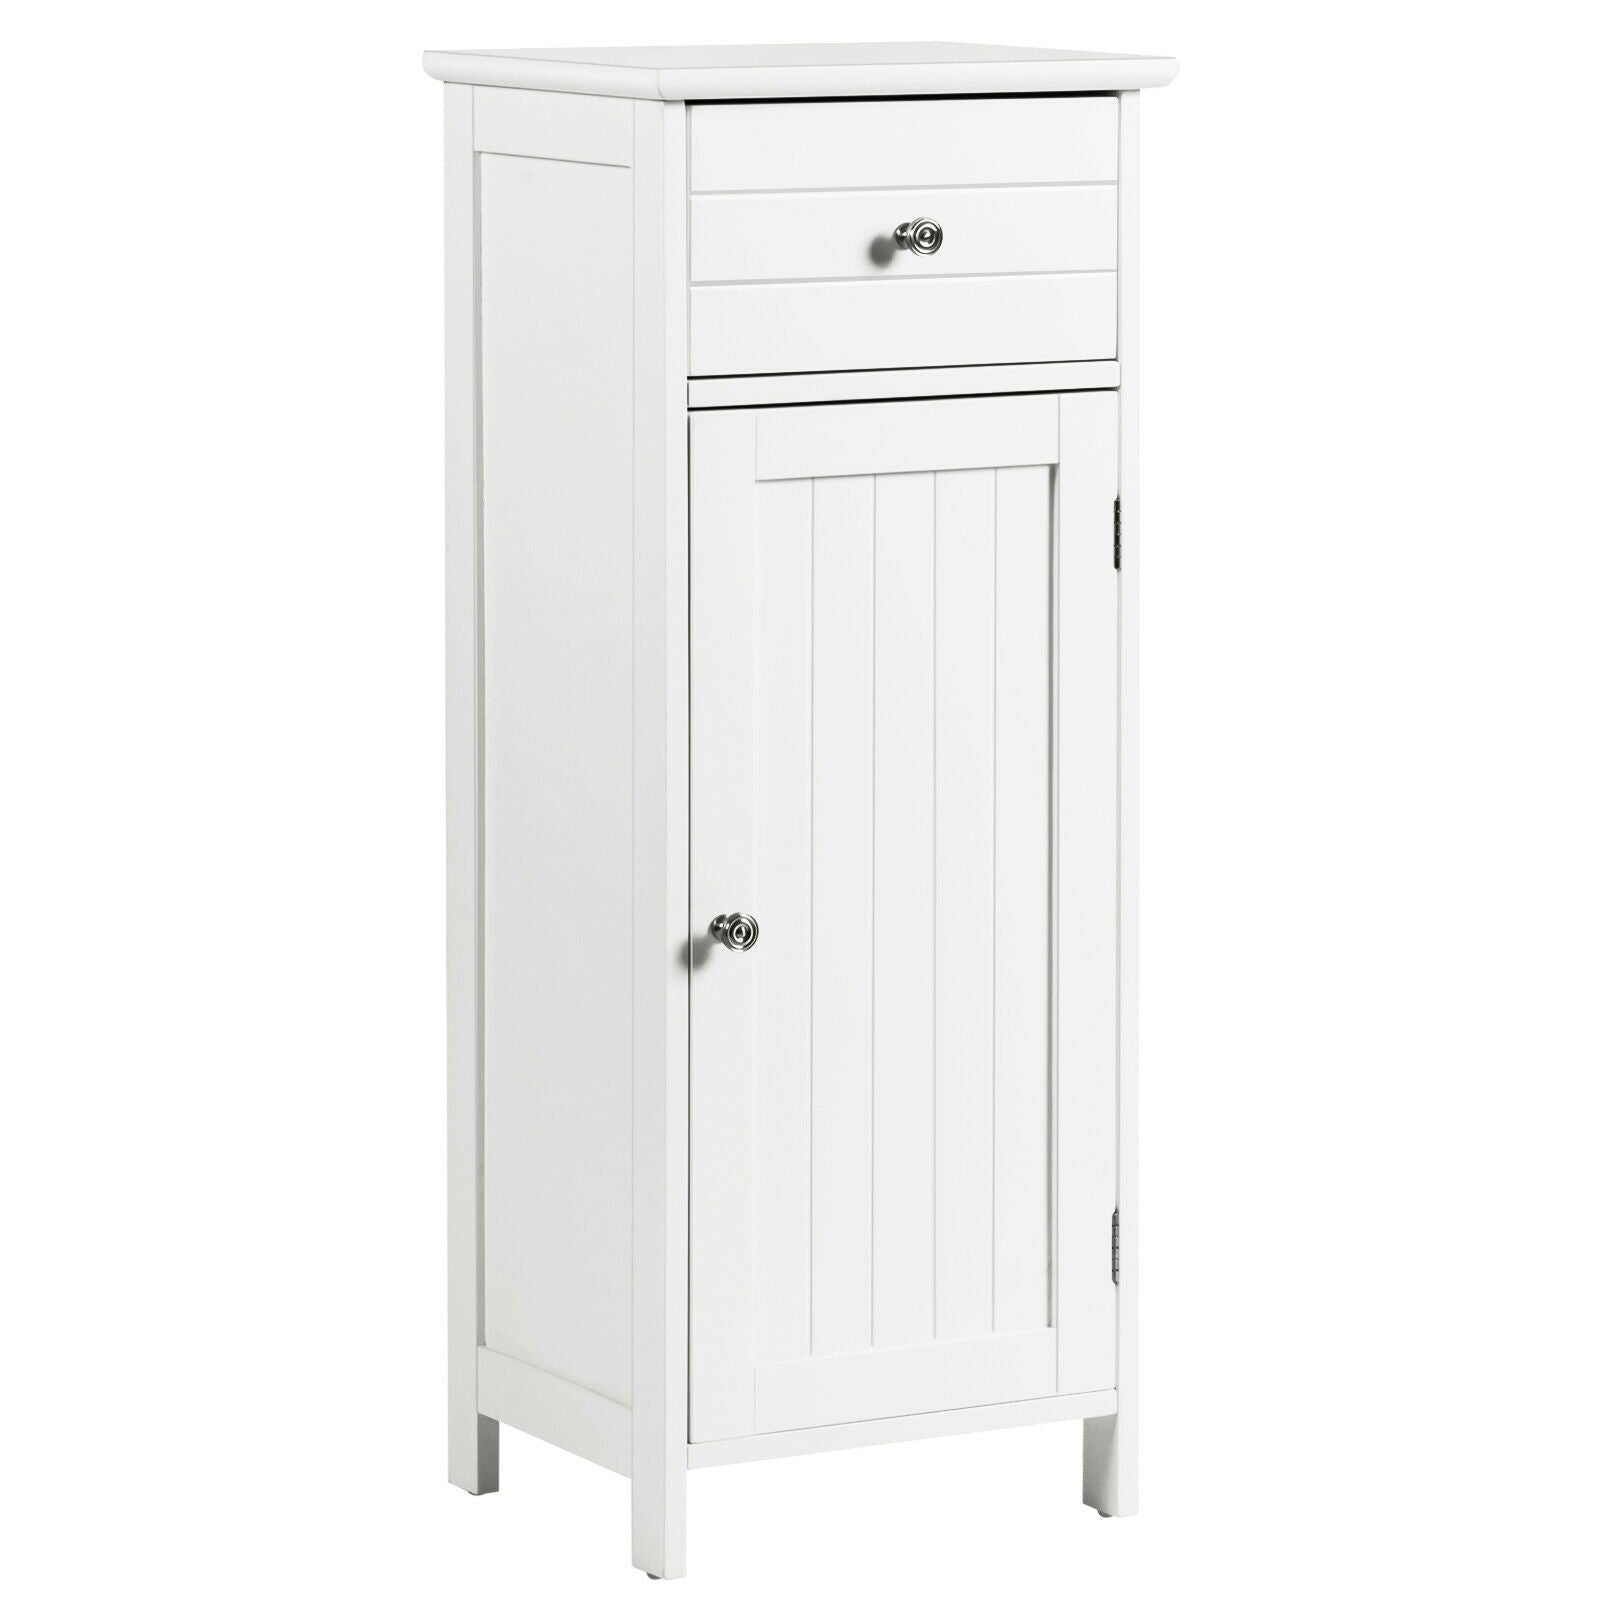 Bathroom Floor Storage Cabinet with Adjustable Shelf & Large Drawer